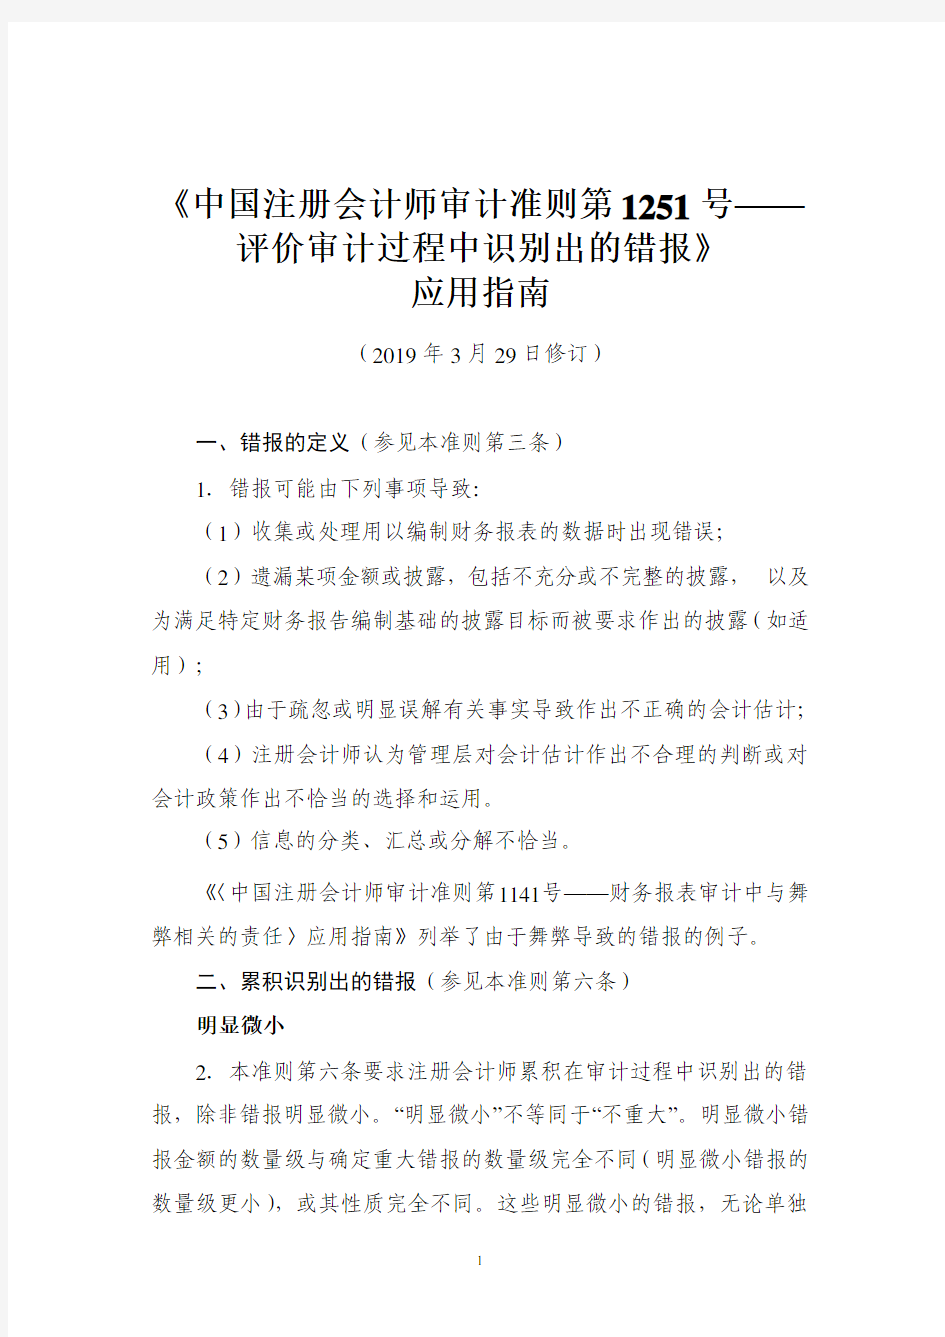 《中国注册会计师审计准则第 1251 号—— 评价审计过程中识别出的错报》 应用指南